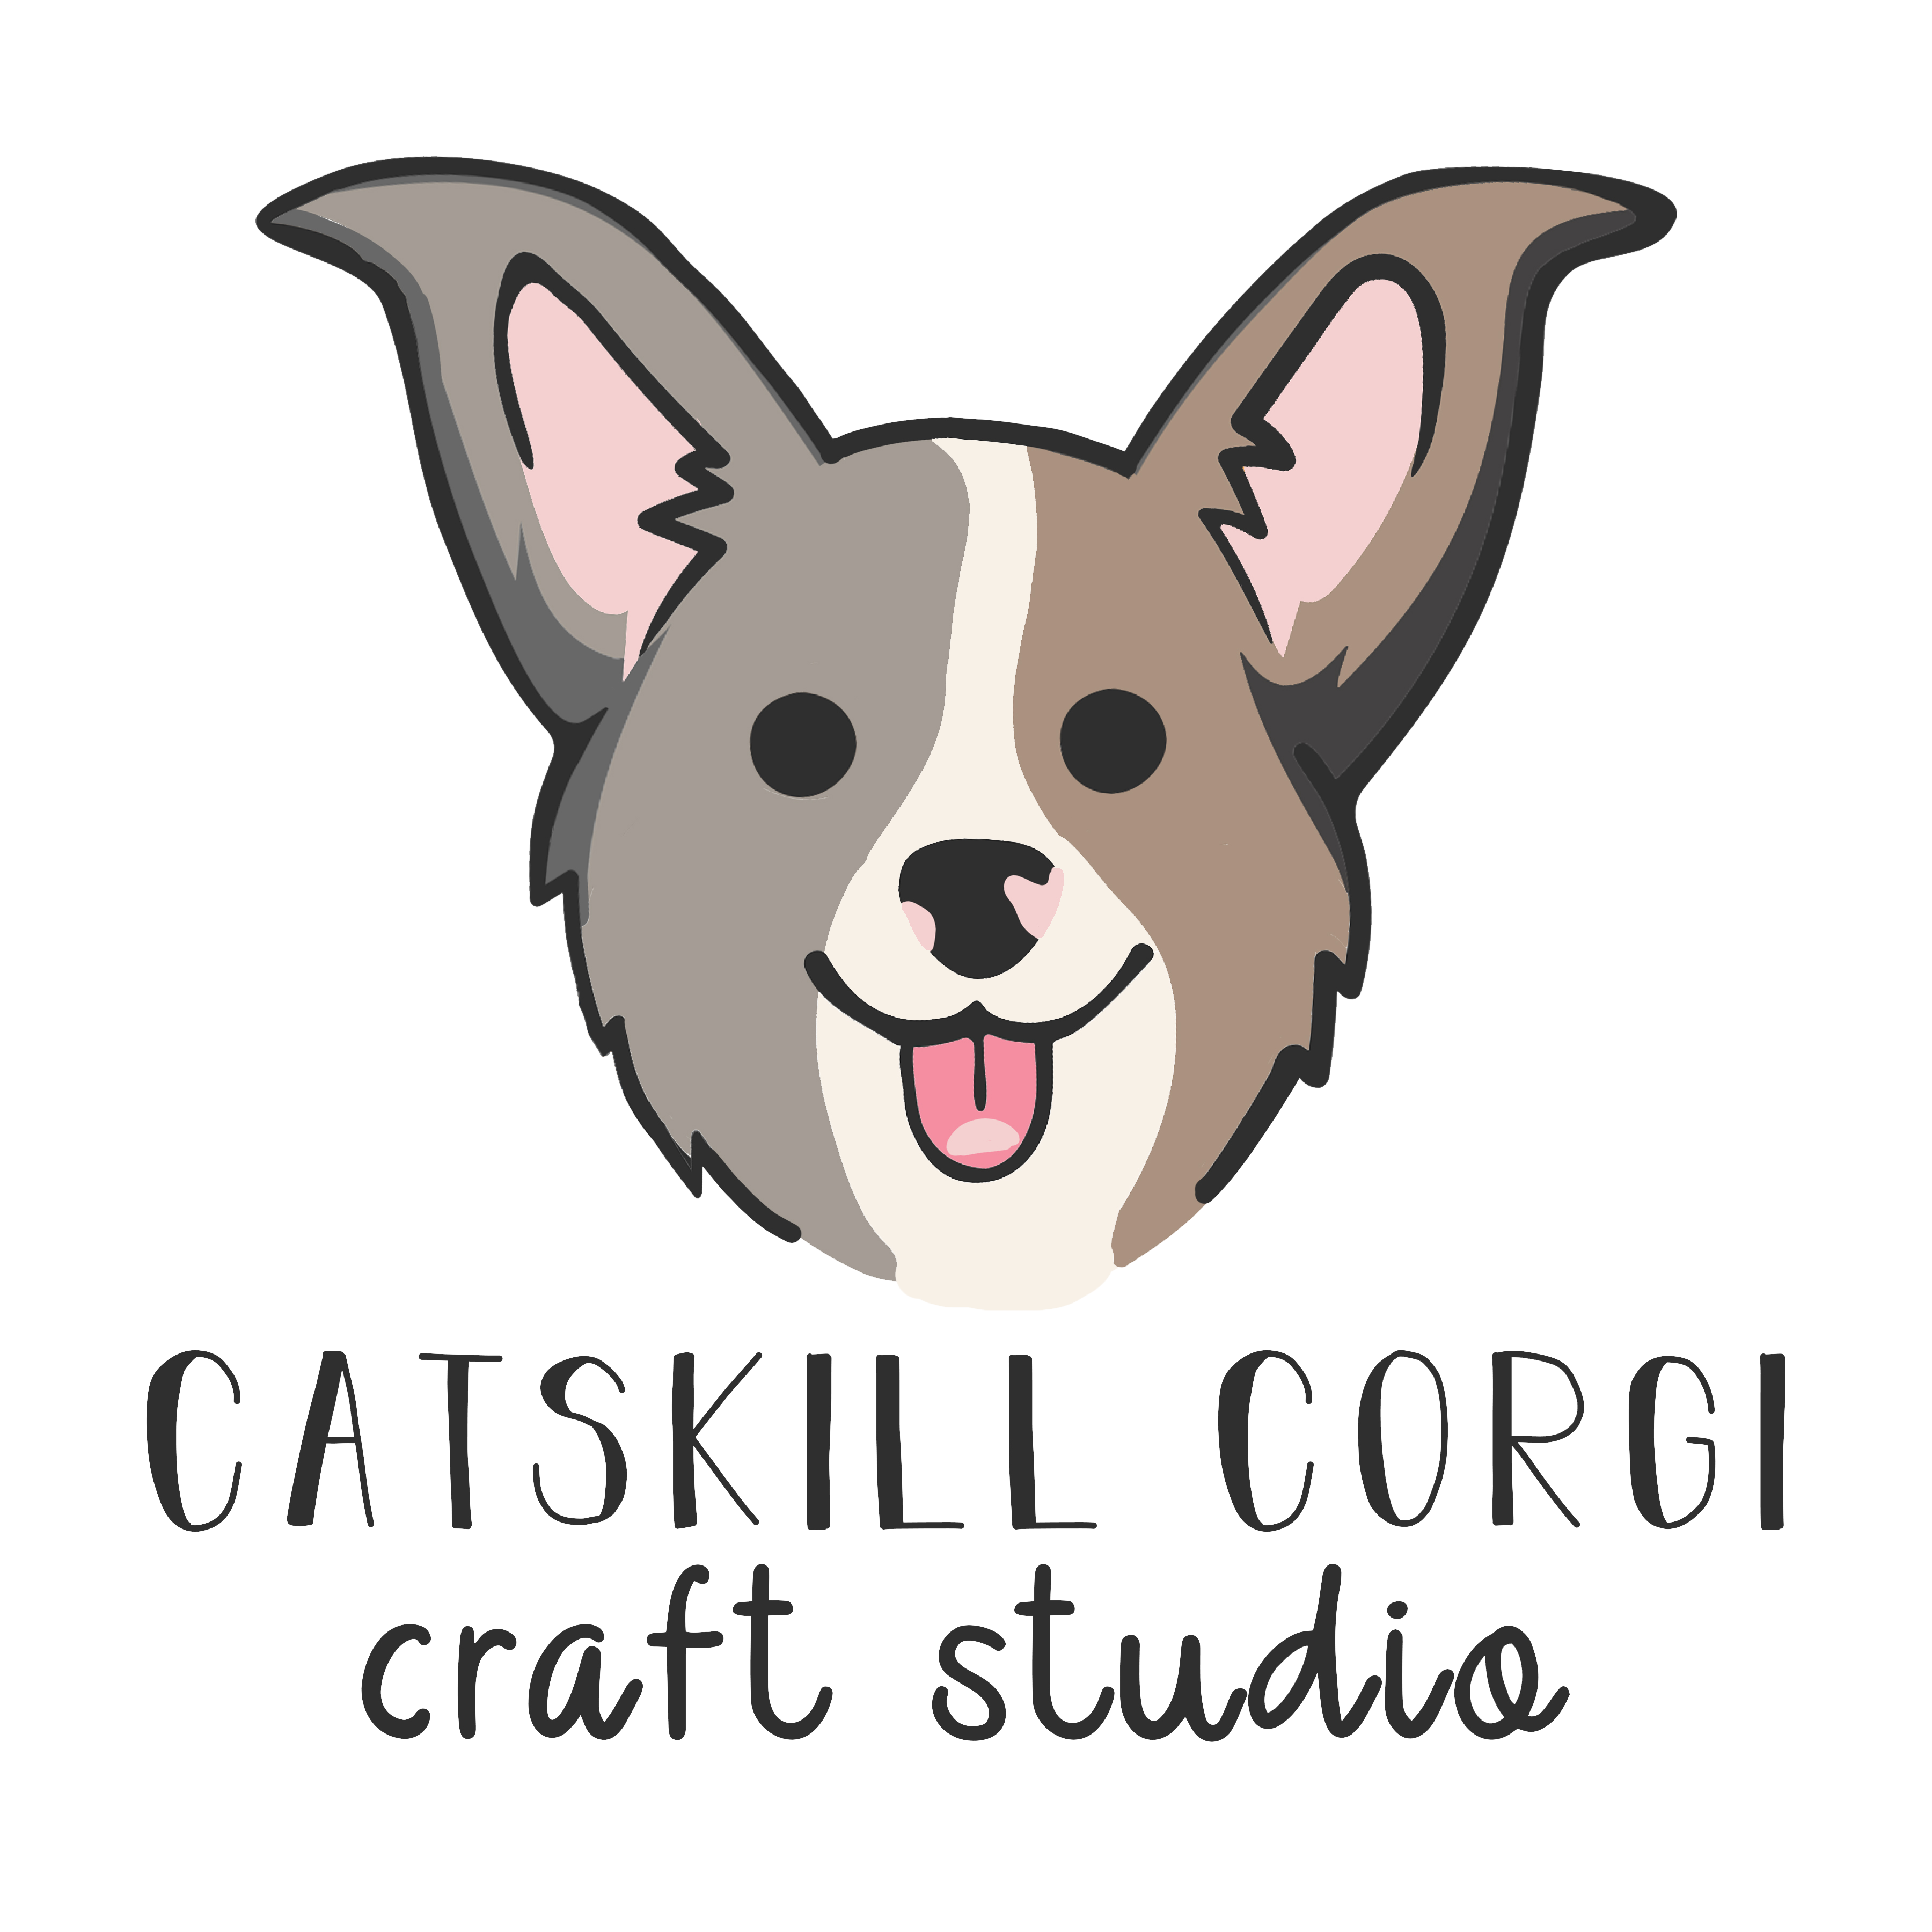 Catskill Corgi Crafts